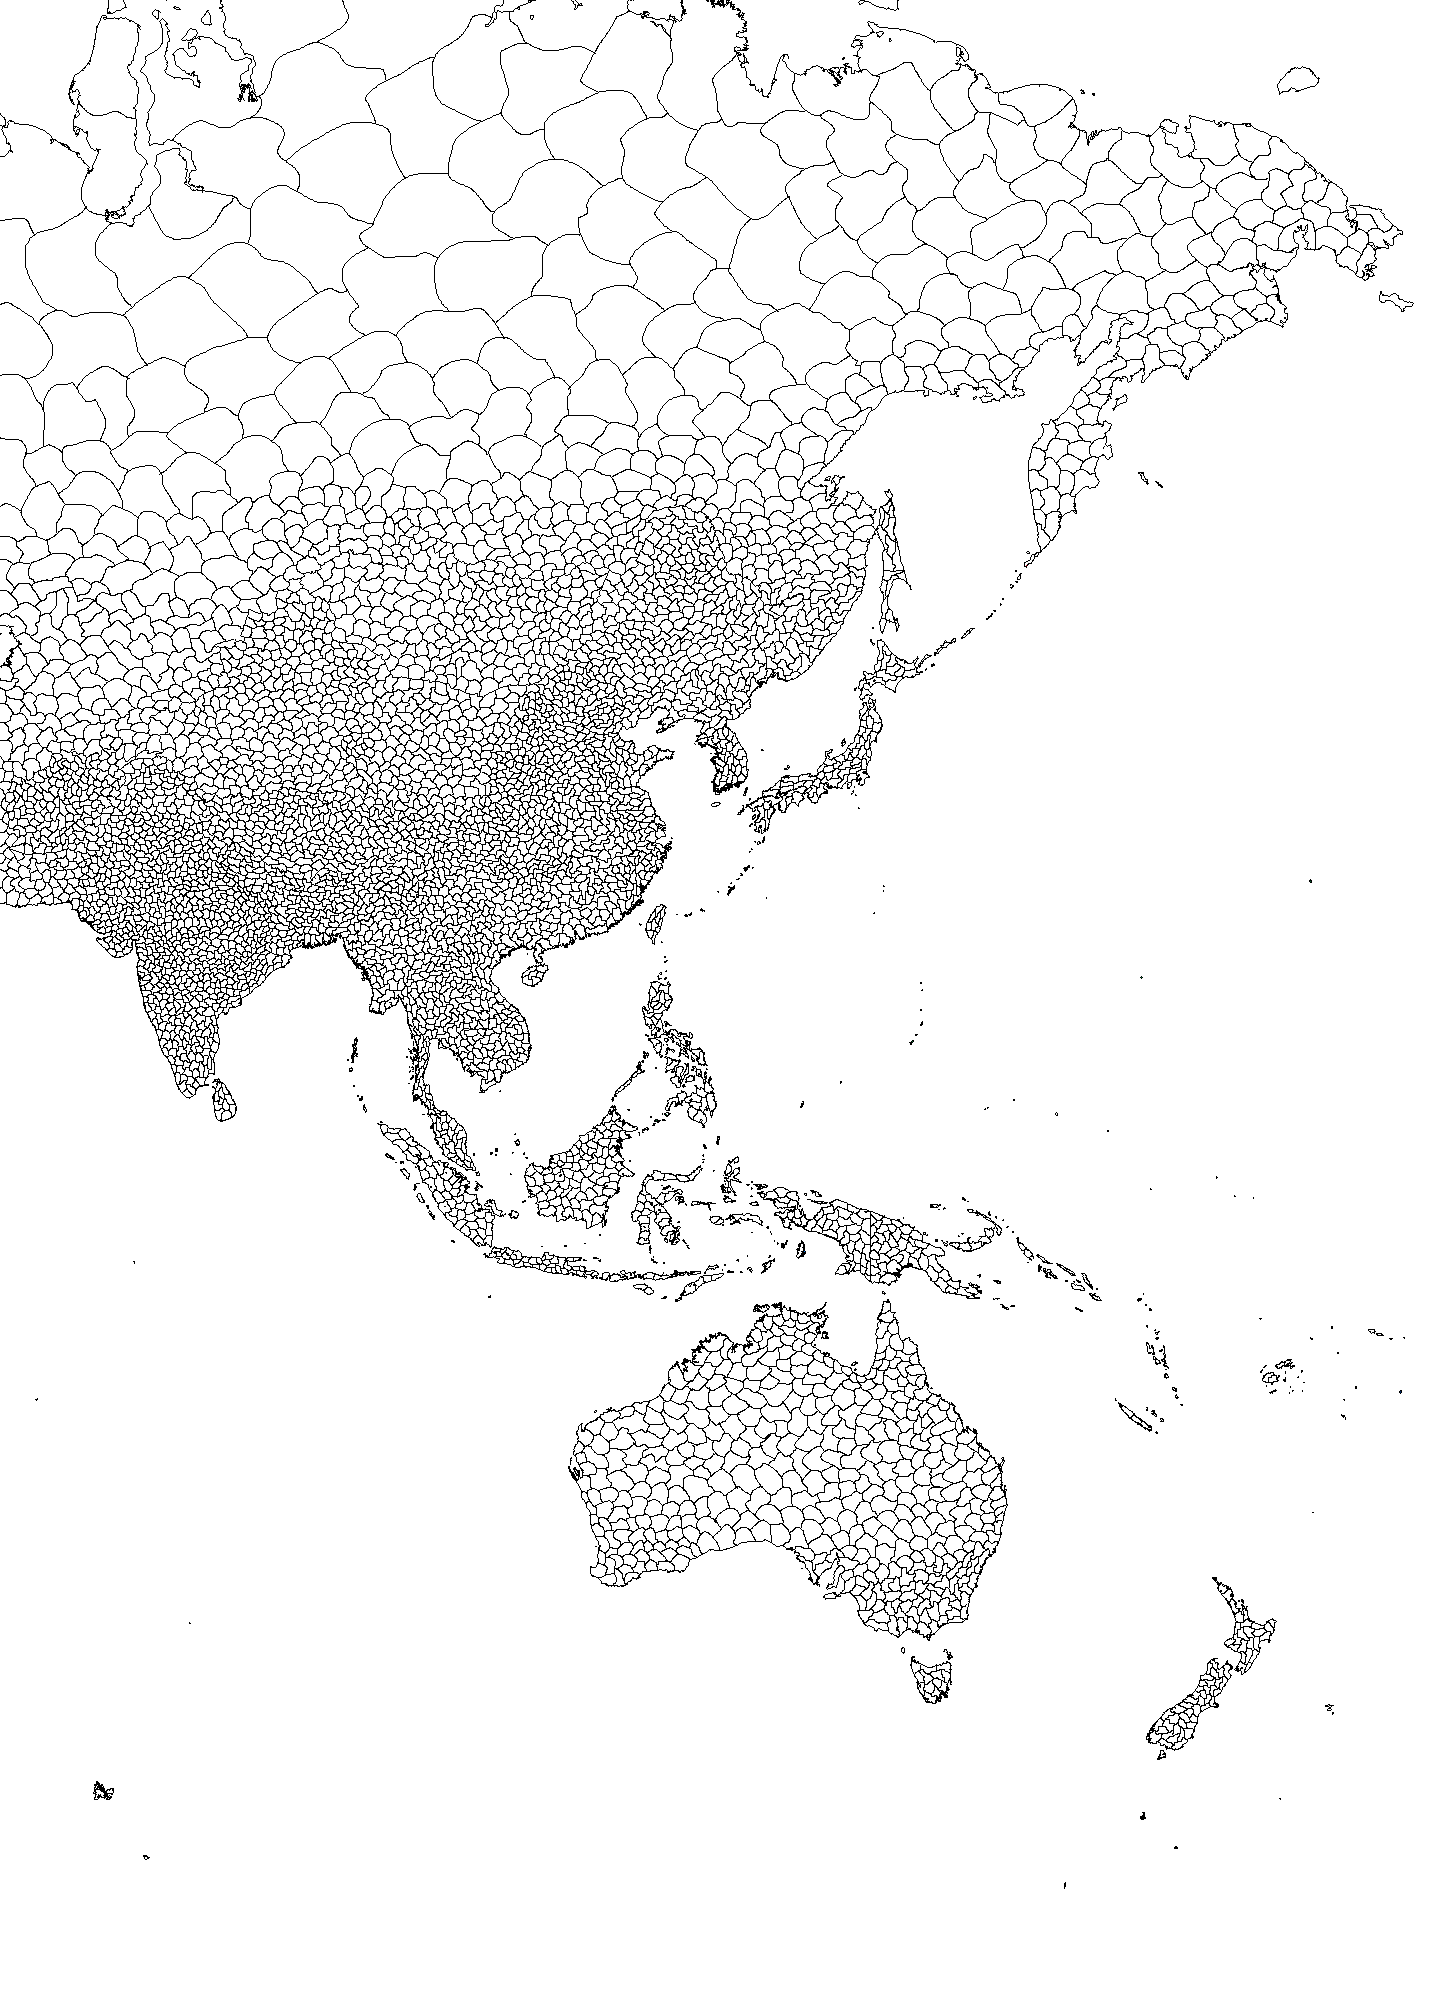 White asia. Карта Евразии с провинциями. Черно белая карта регионов Азии. Карта Азии с провинциями. Карта Азии по провинциям.